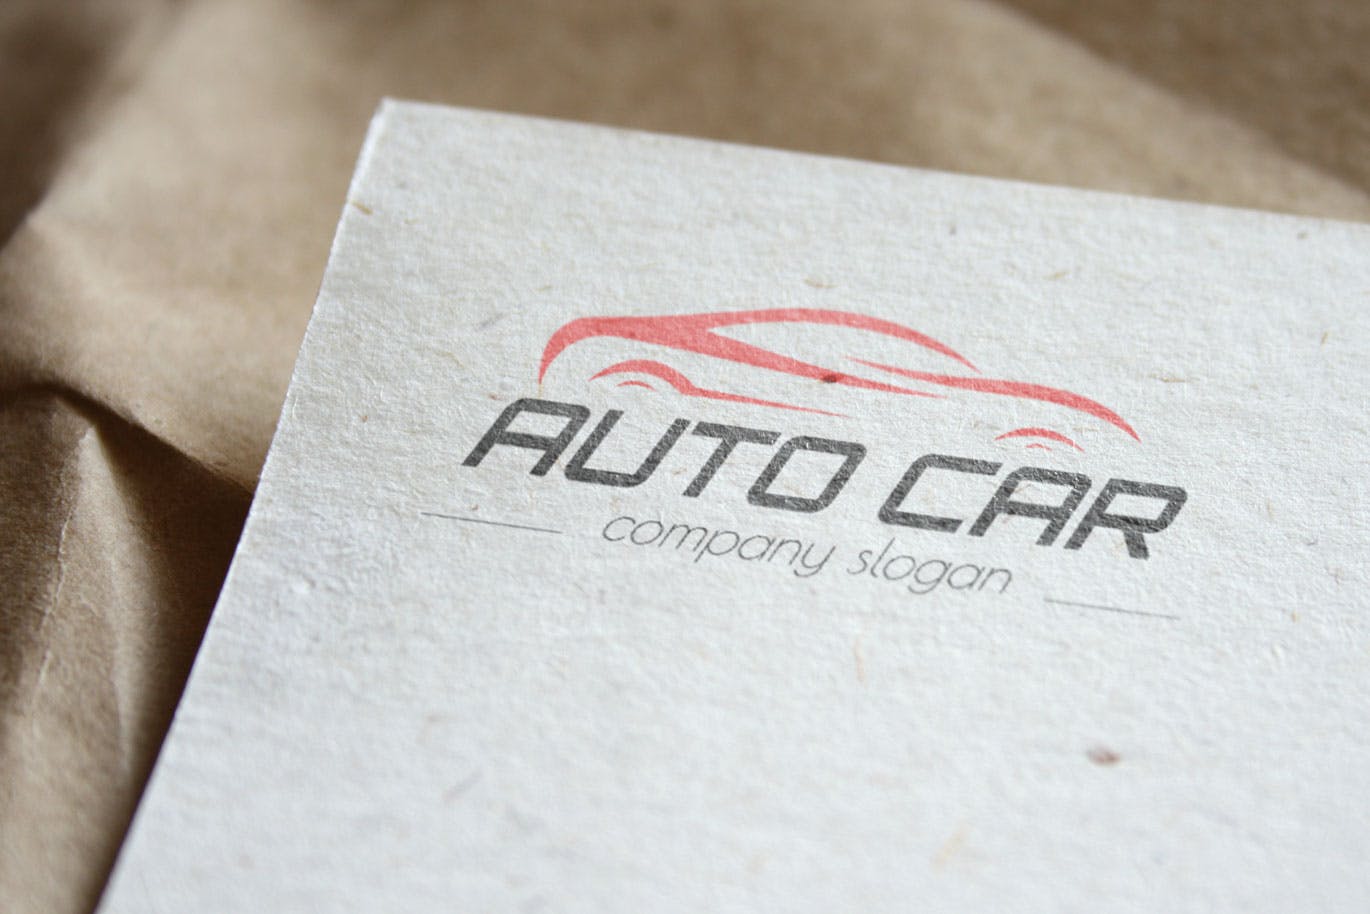 汽车相关企业品牌Logo设计蚂蚁素材精选模板 Auto Car Business Logo Template插图(3)